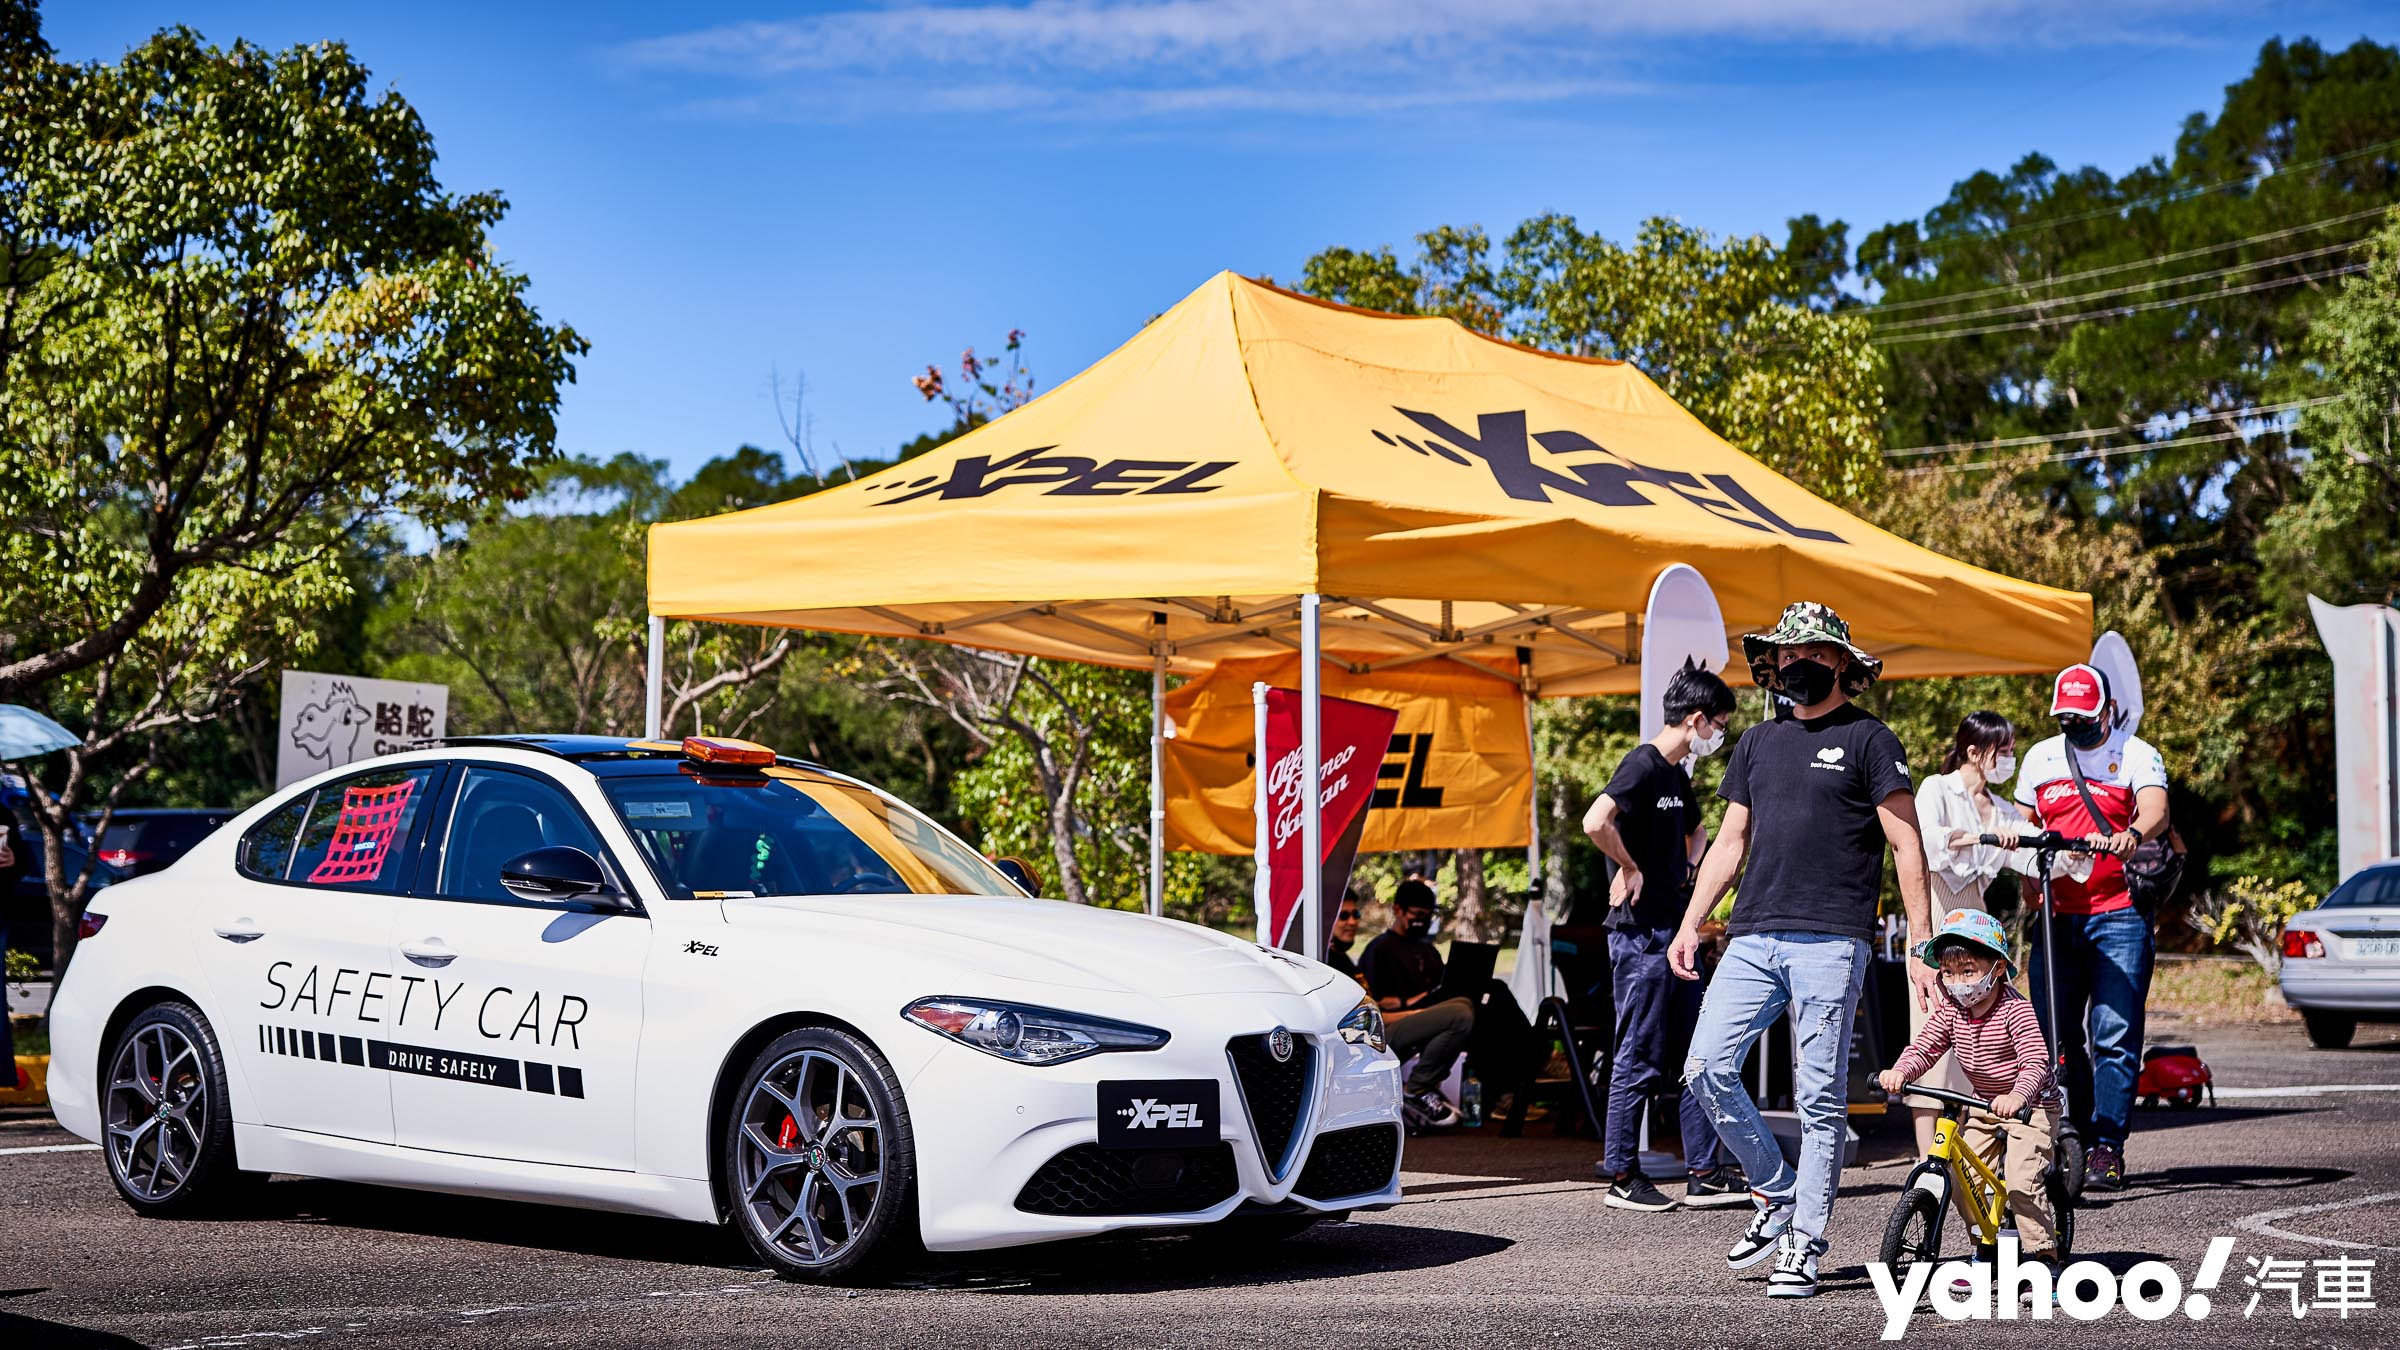 知名保護膜品牌Xpel依循著車友關係網而熱切贊助活動站台。